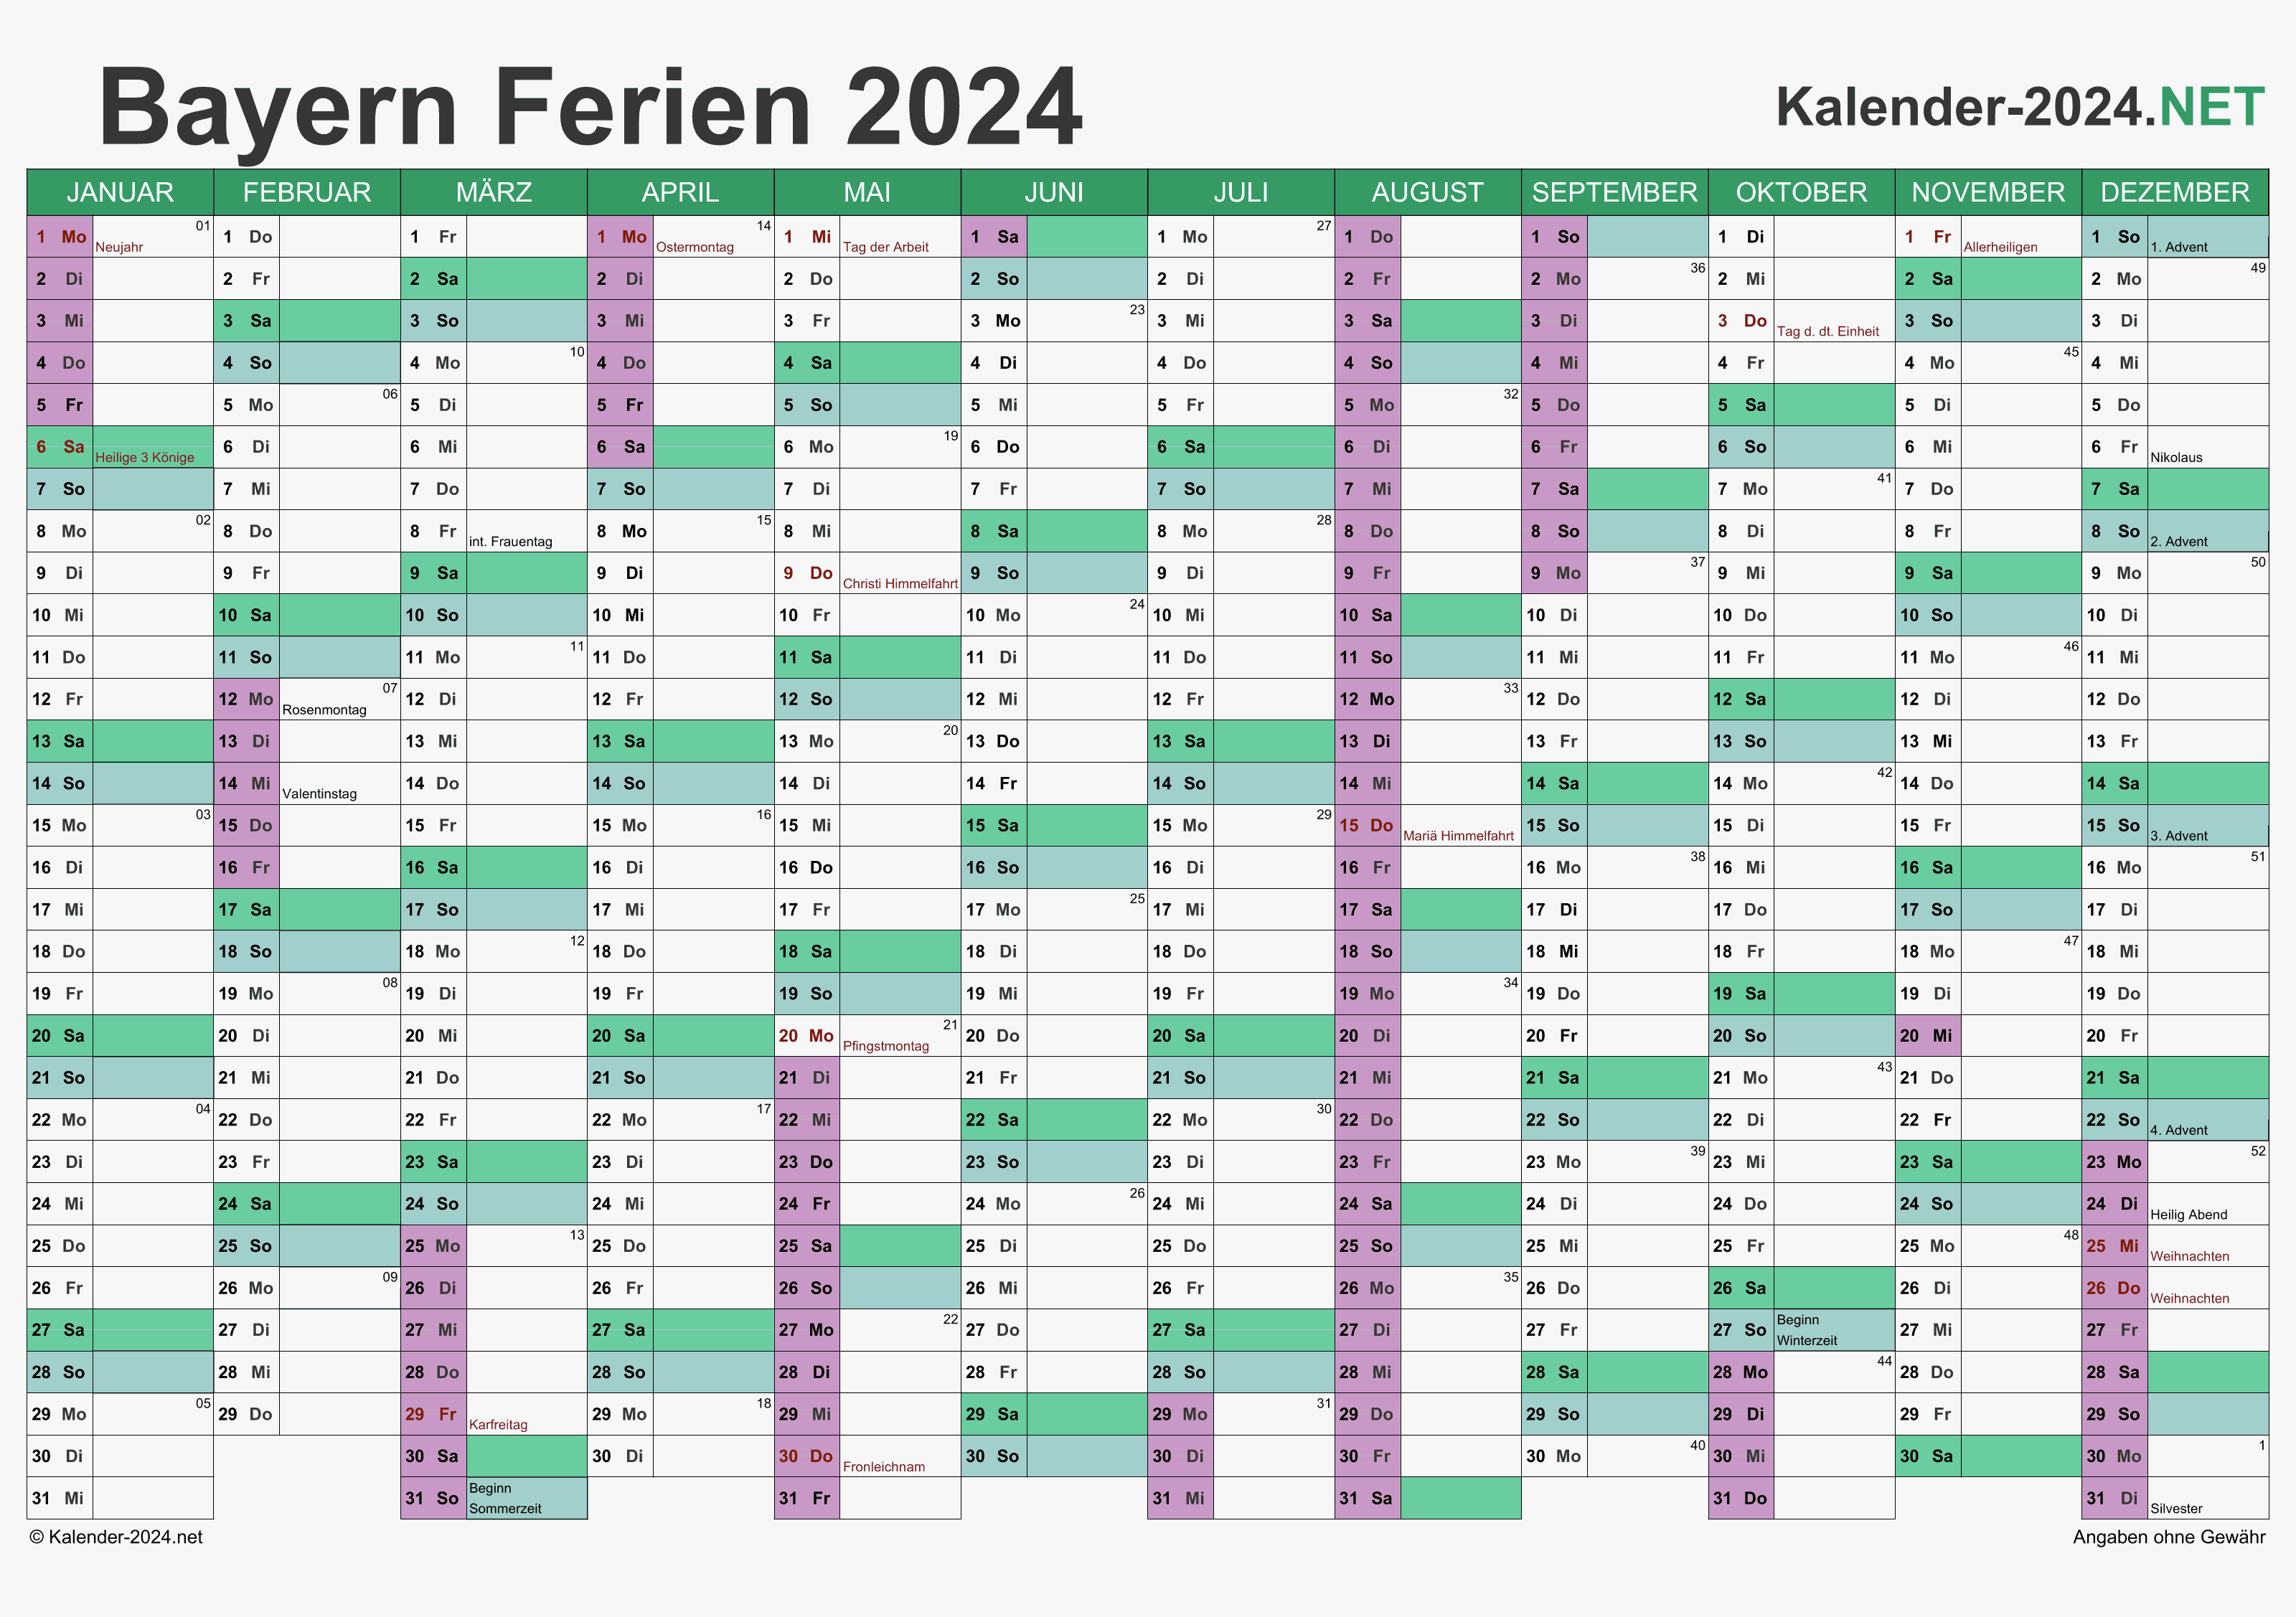 FERIEN Bayern 2024 Ferienkalender & Übersicht